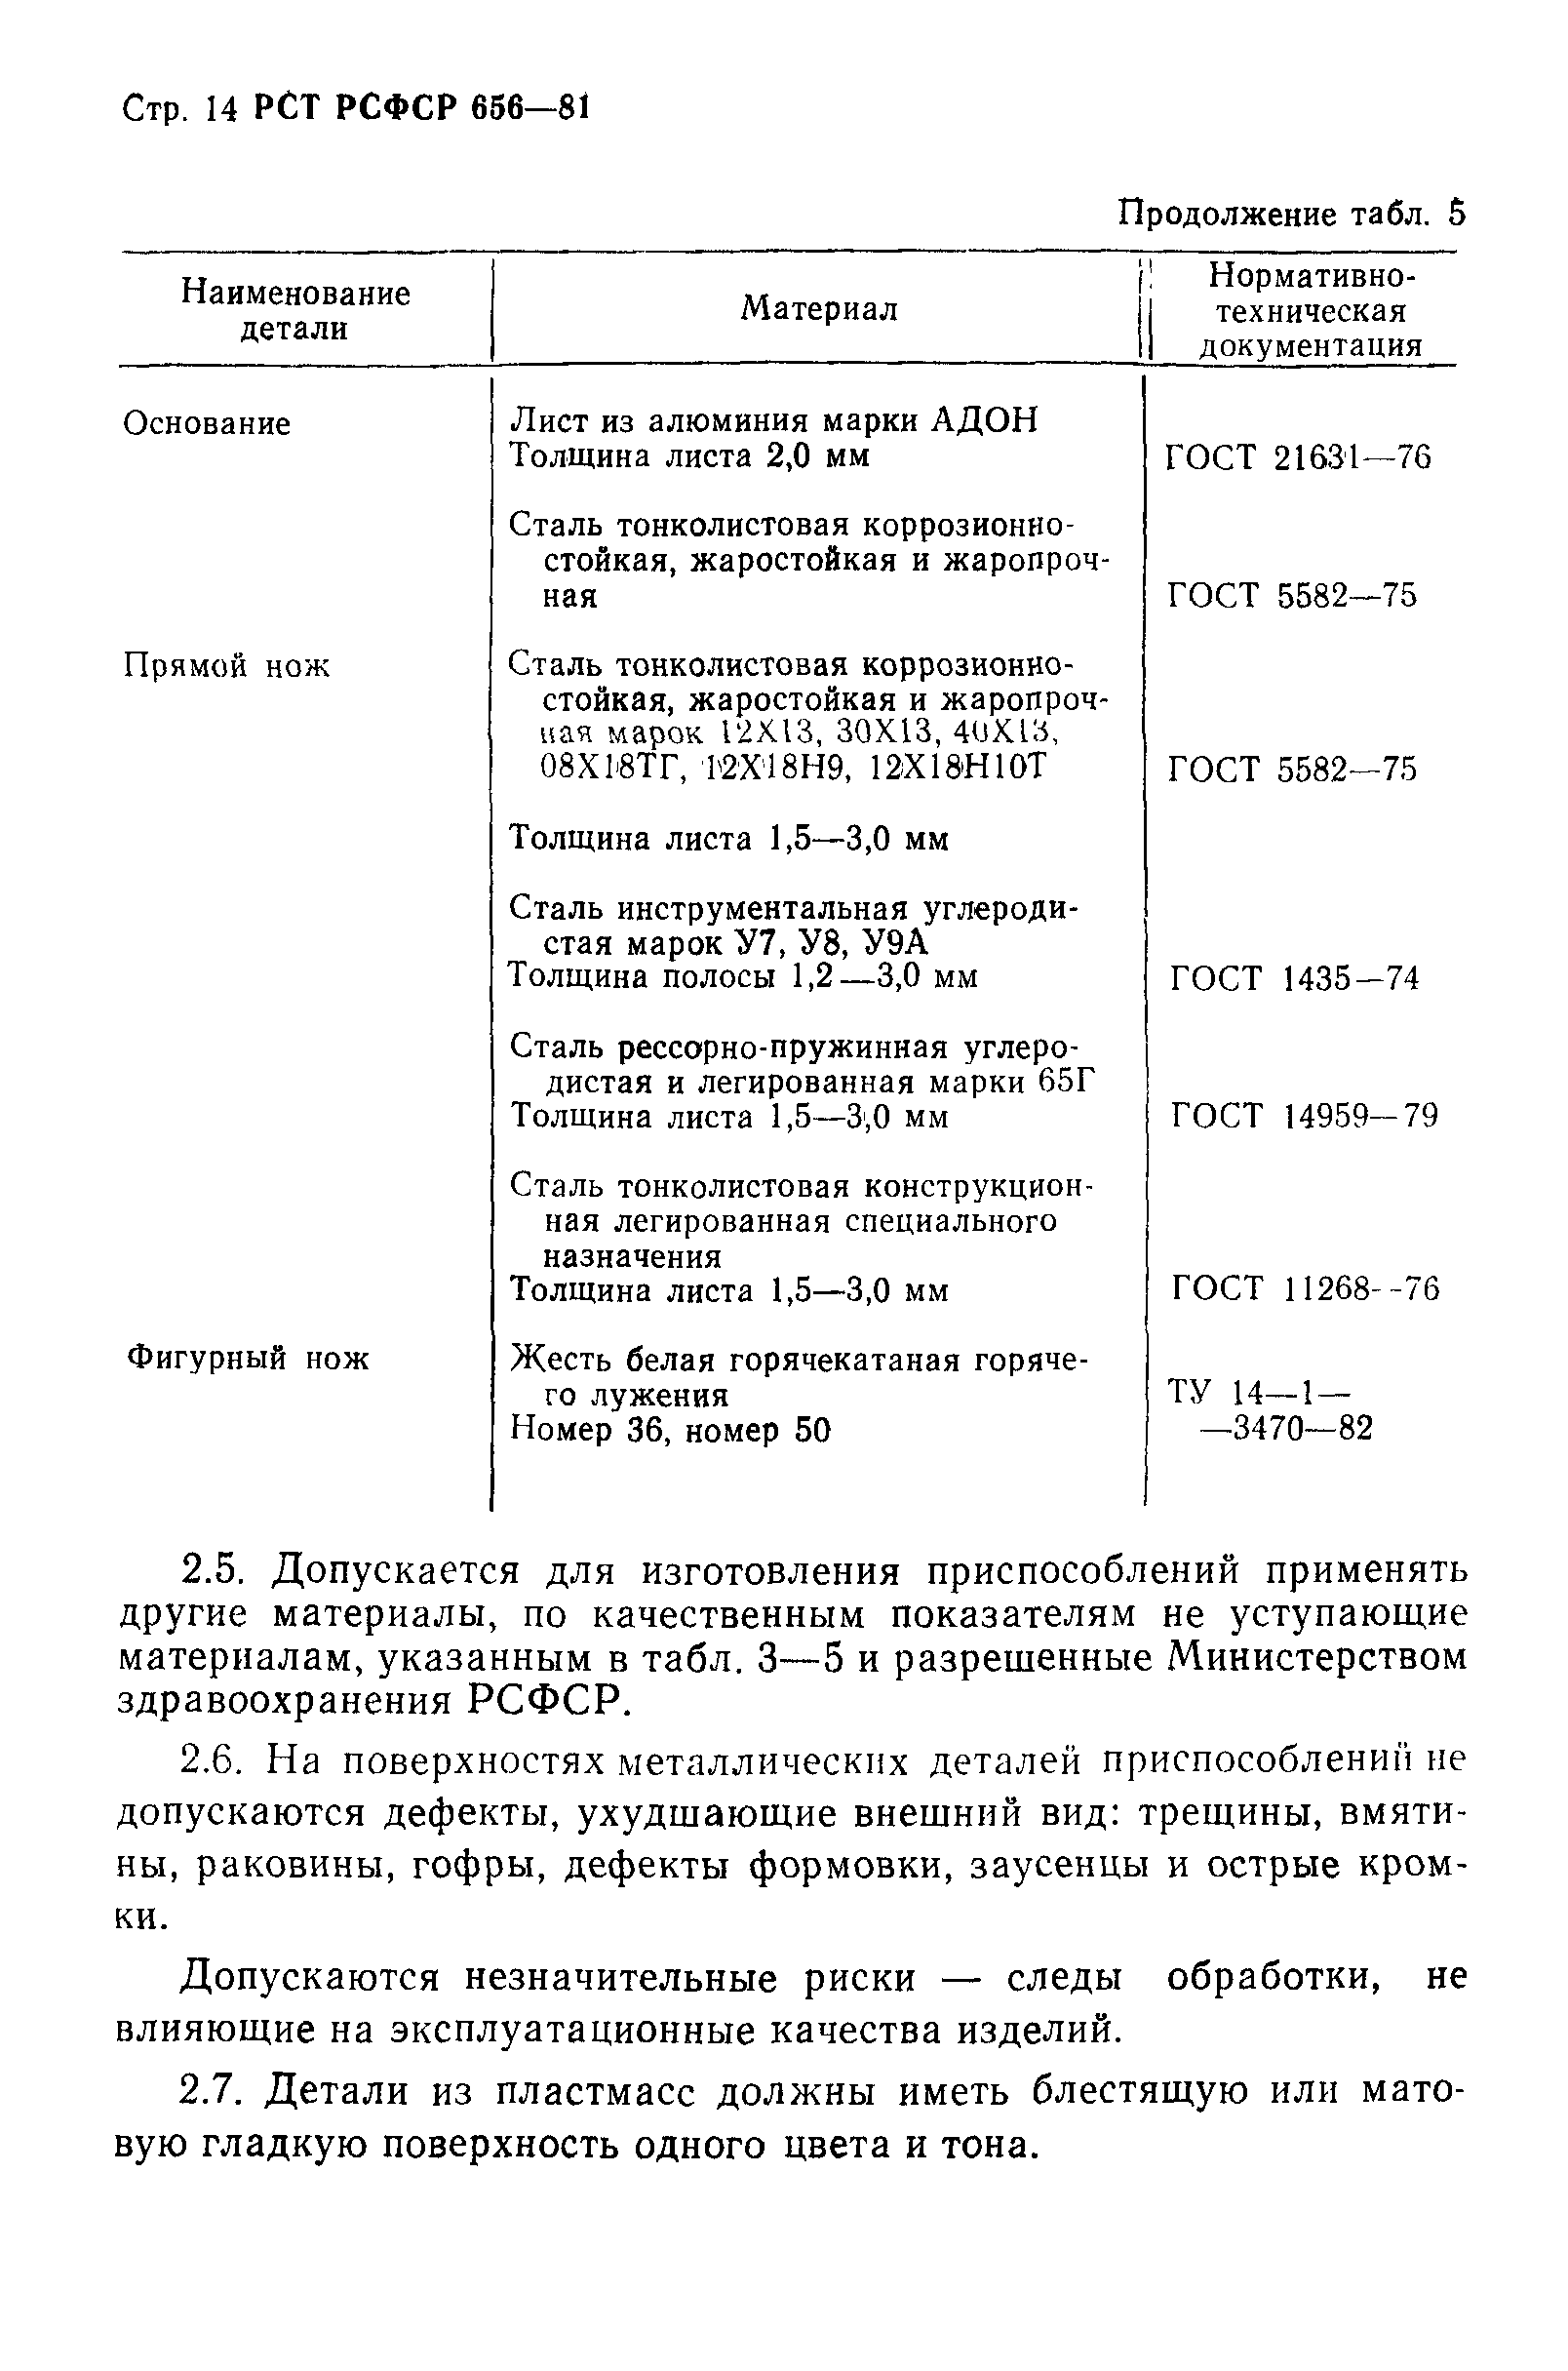 РСТ РСФСР 656-81